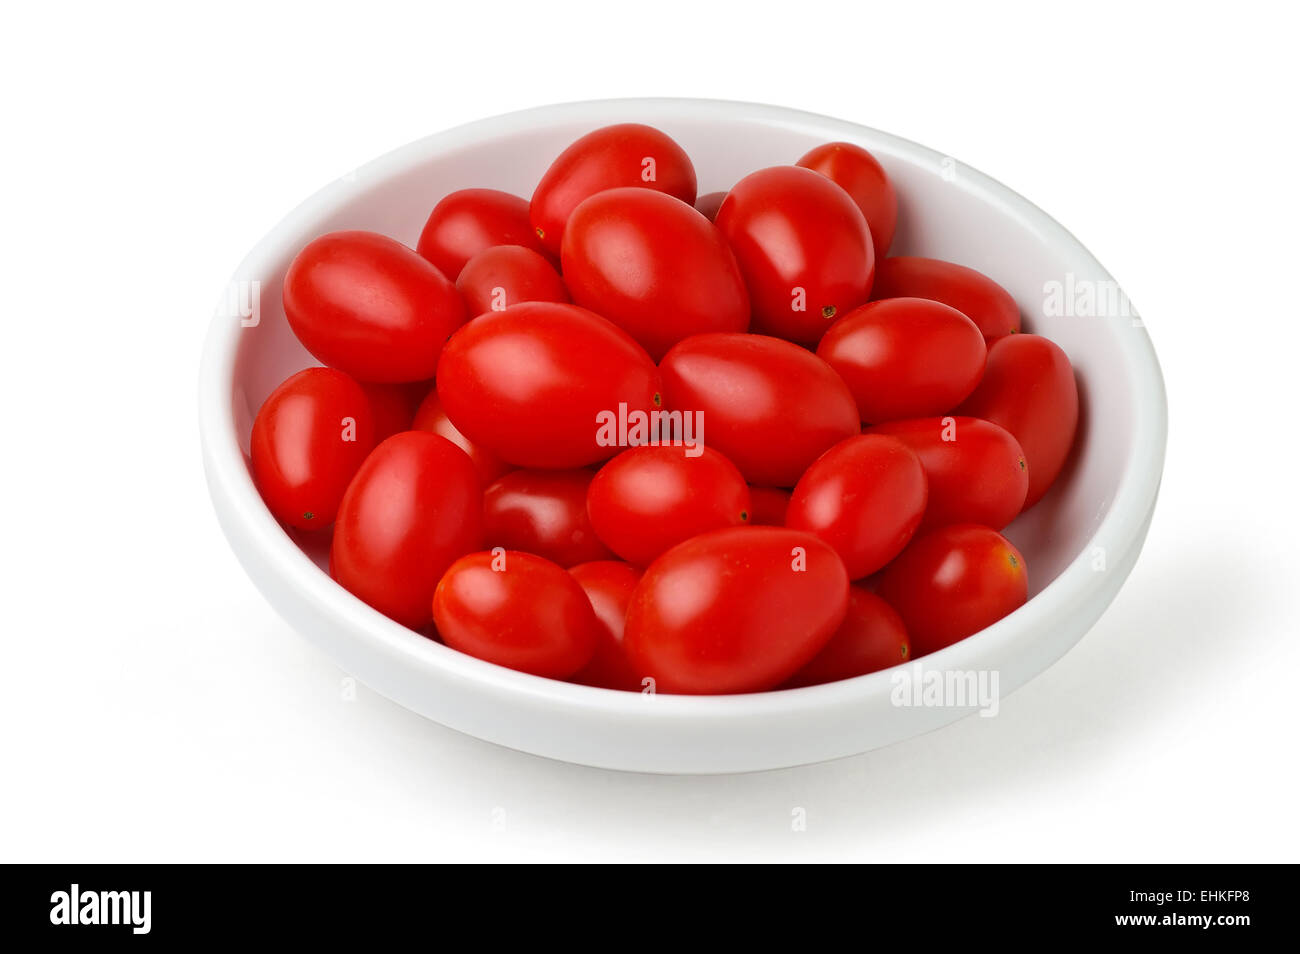 Plat avec les tomates cerise Avec clipping path Banque D'Images